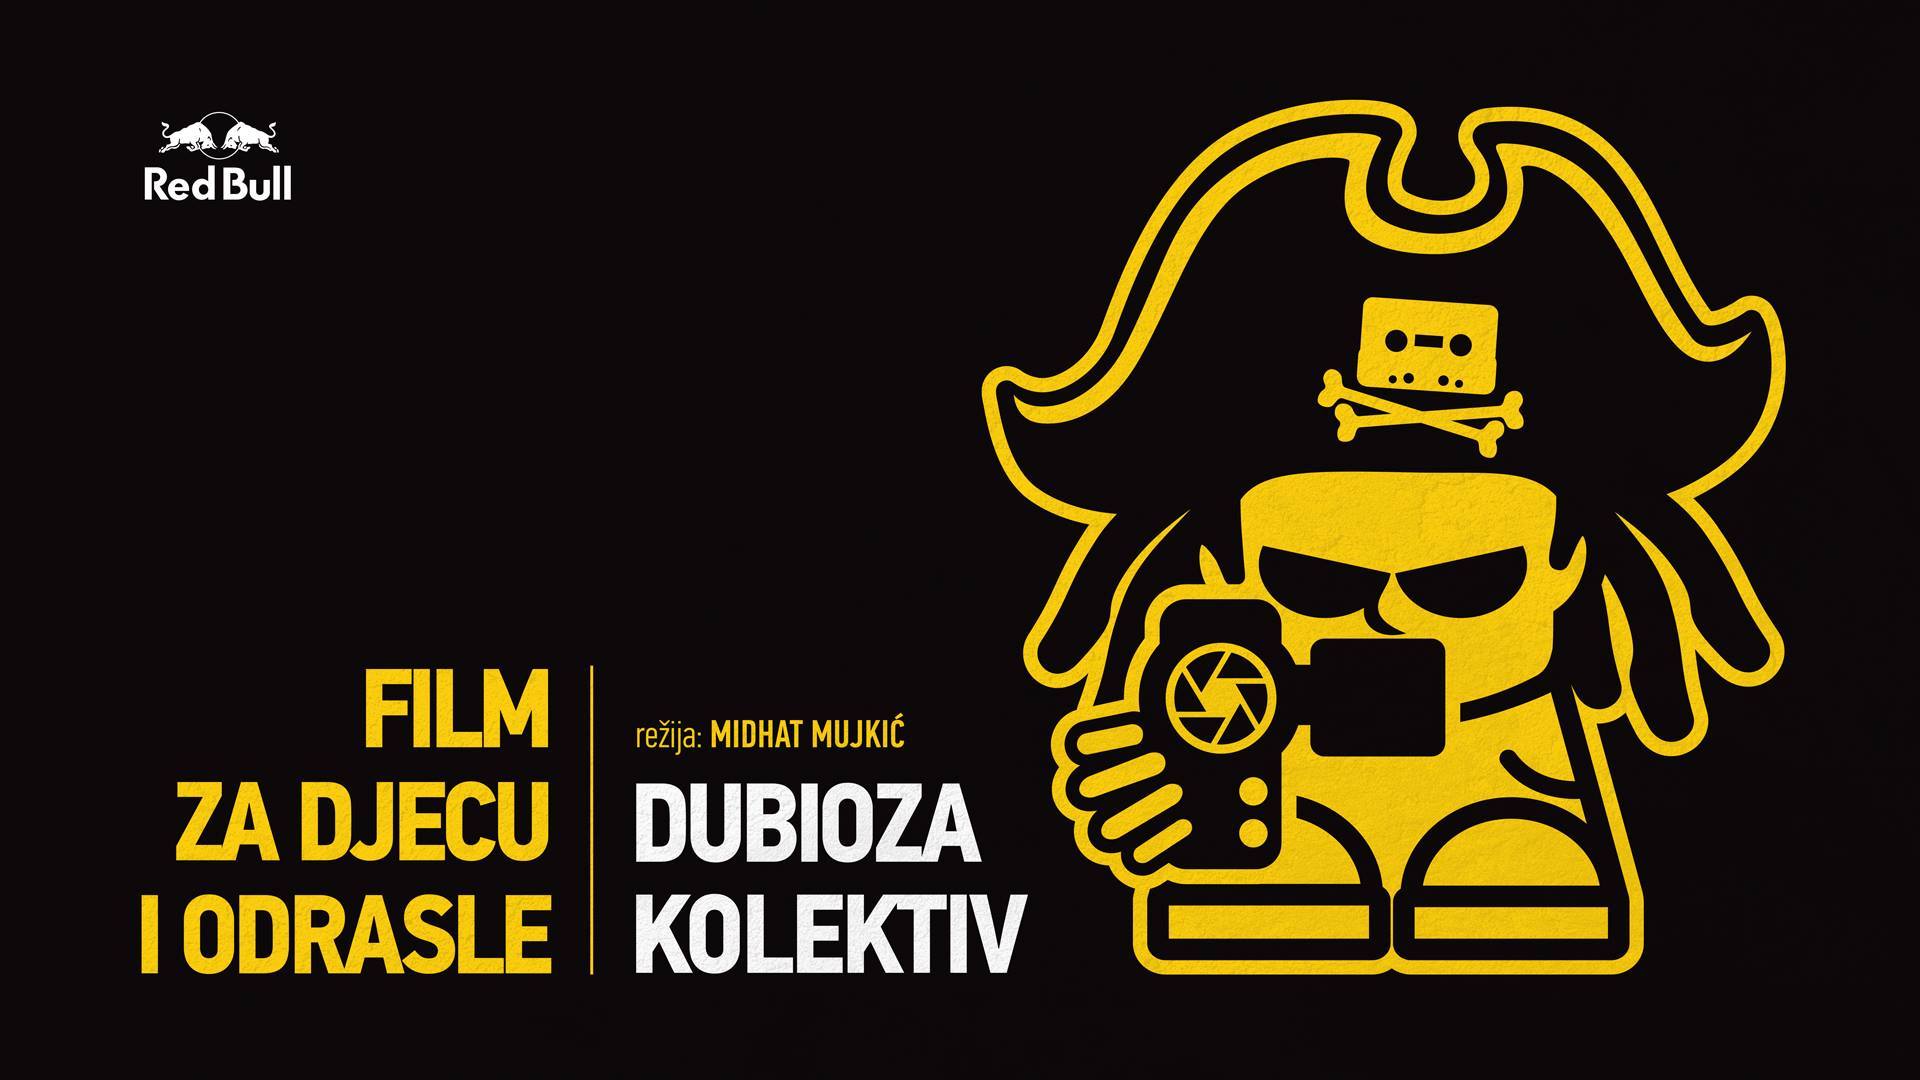 Dubioza kolektiv-Film za odrasle i djecu u Beču